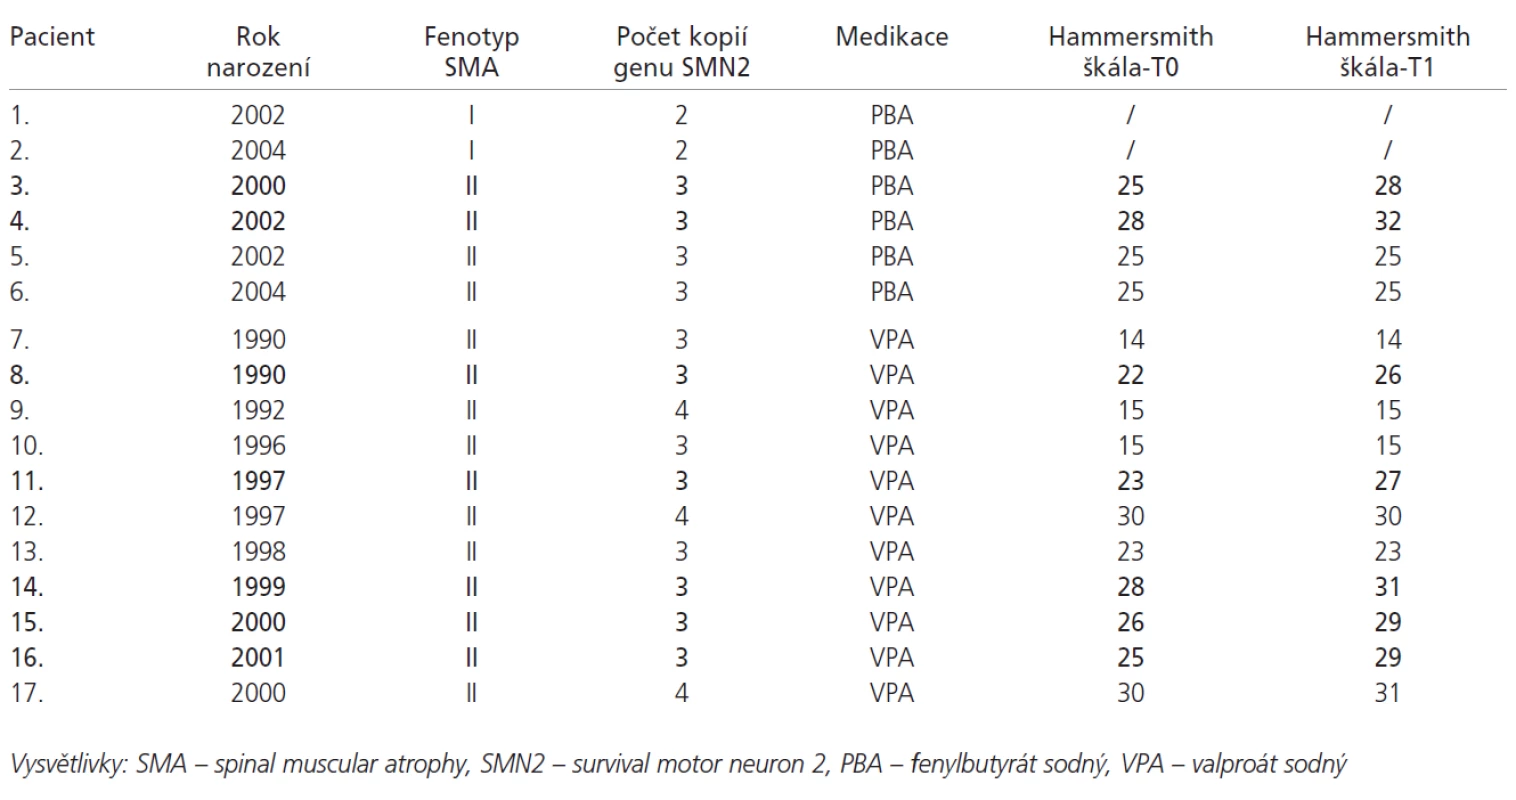 Přehled pacientů s medikací PBA a VPA. Tučně jsou vyznačeni pacienti, u kterých došlo ke zvýšení hodnoty Hammersmith funkční motorické škály o 3 a více bodů.